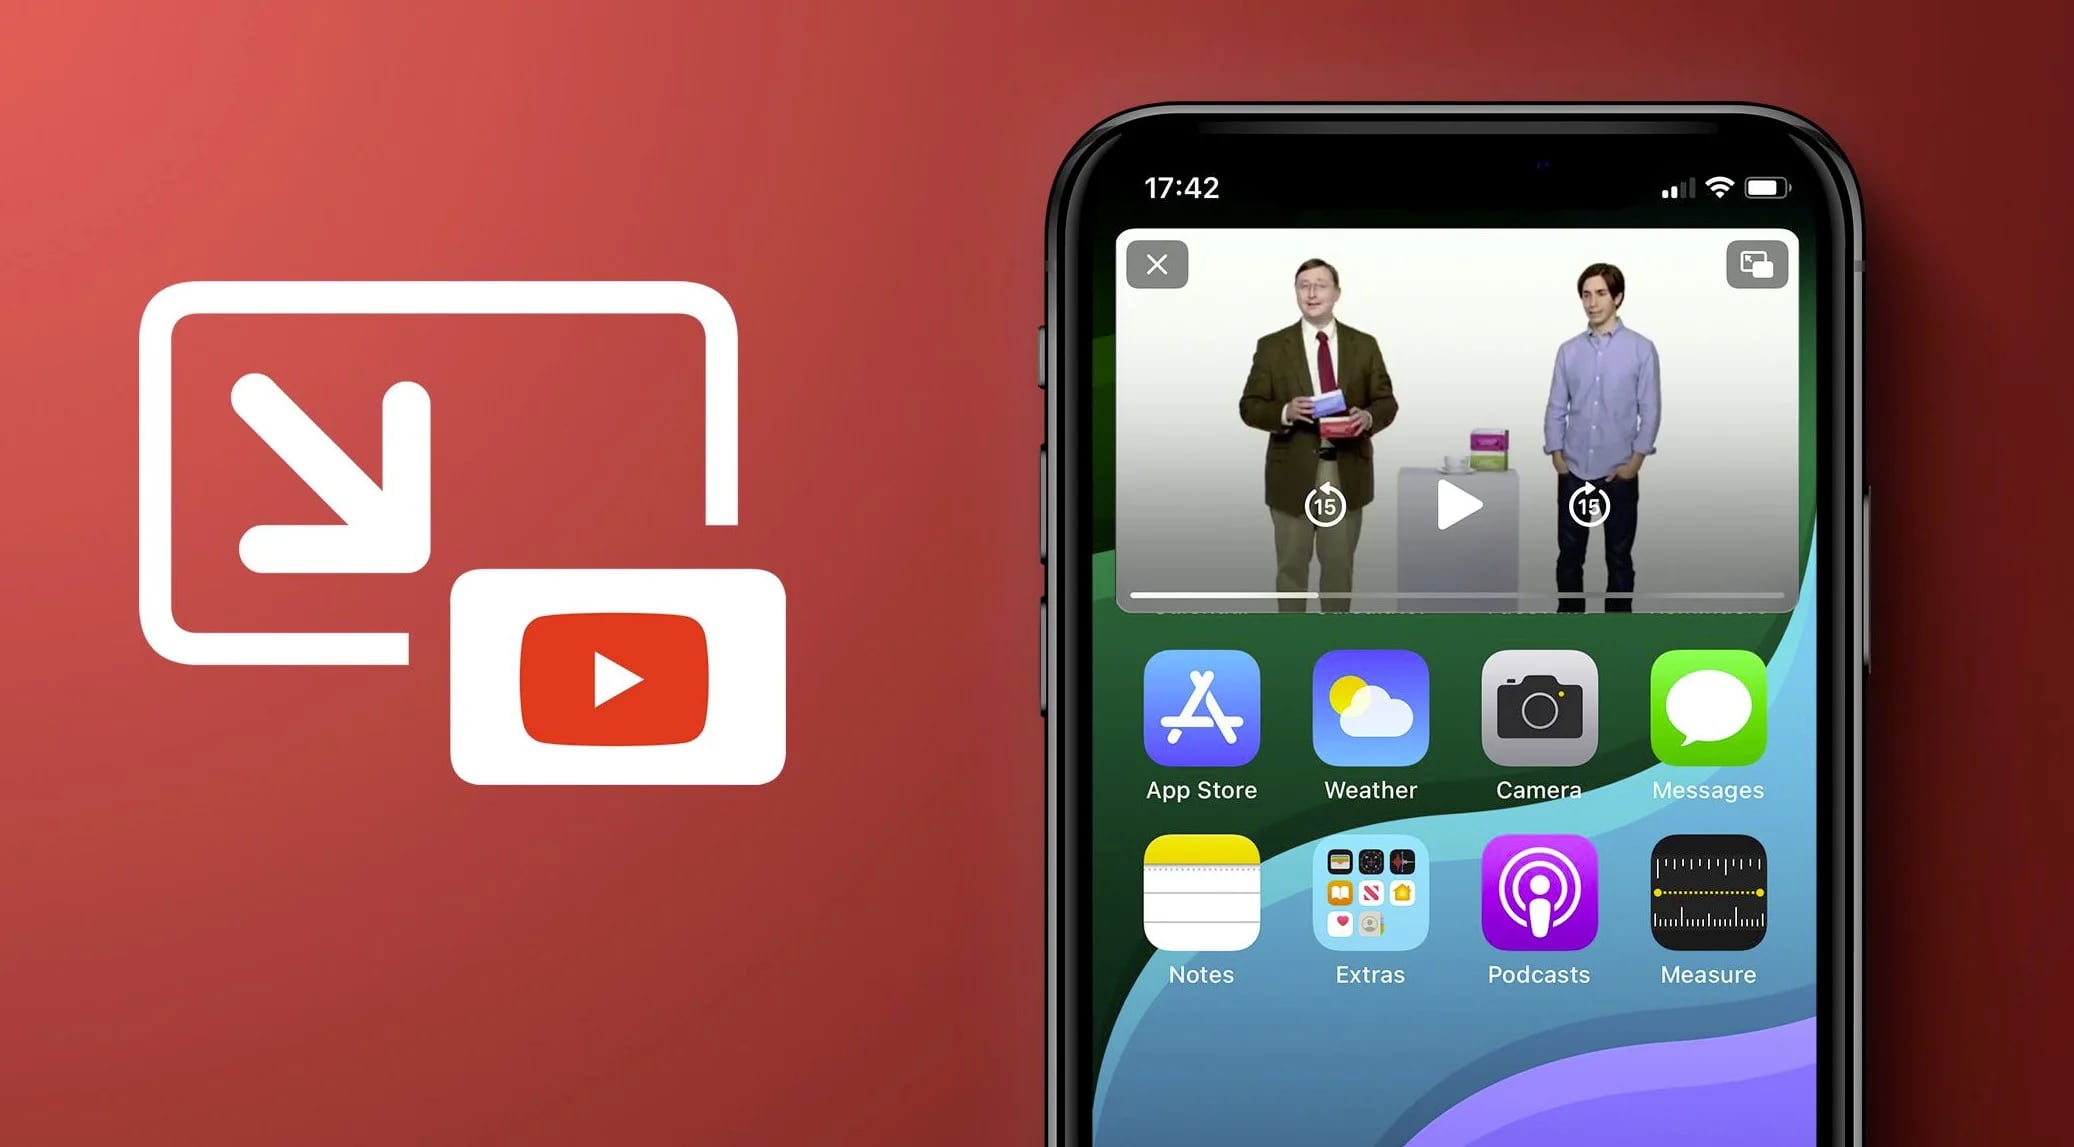 Usuarios de iPhone y iPad podrán ver videos de YouTube en segundo plano